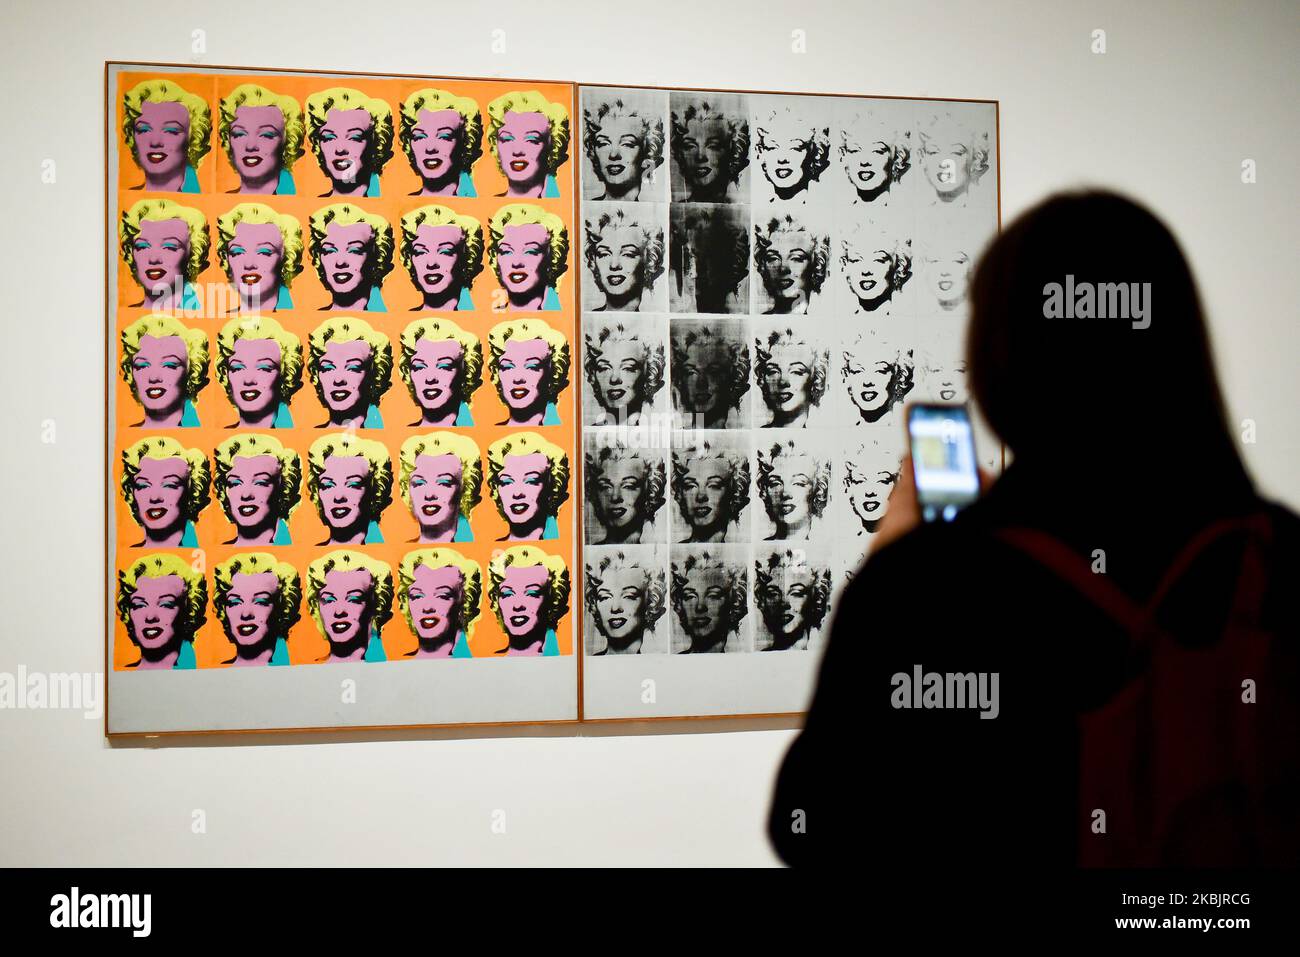 Un assistant de galerie pose avec une œuvre intitulée « Marilyn diptych » 1962 », réalisée par l'artiste américain Andy Warhol lors d'un avant-goût de la prochaine exposition d'Andy Warhol au Tate Modern de Londres sur 10 mars 2020. - L'exposition est prévue de 12 mars à 6 septembre. (LIMITÉ À UN USAGE ÉDITORIAL - MENTION OBLIGATOIRE DE L'ARTISTE LORS DE LA PUBLICATION - POUR ILLUSTRER L'ÉVÉNEMENT TEL QUE SPÉCIFIÉ DANS LA LÉGENDE) (PHOTO D'ALBERTO PEZZALI/NURPHOTO) Banque D'Images